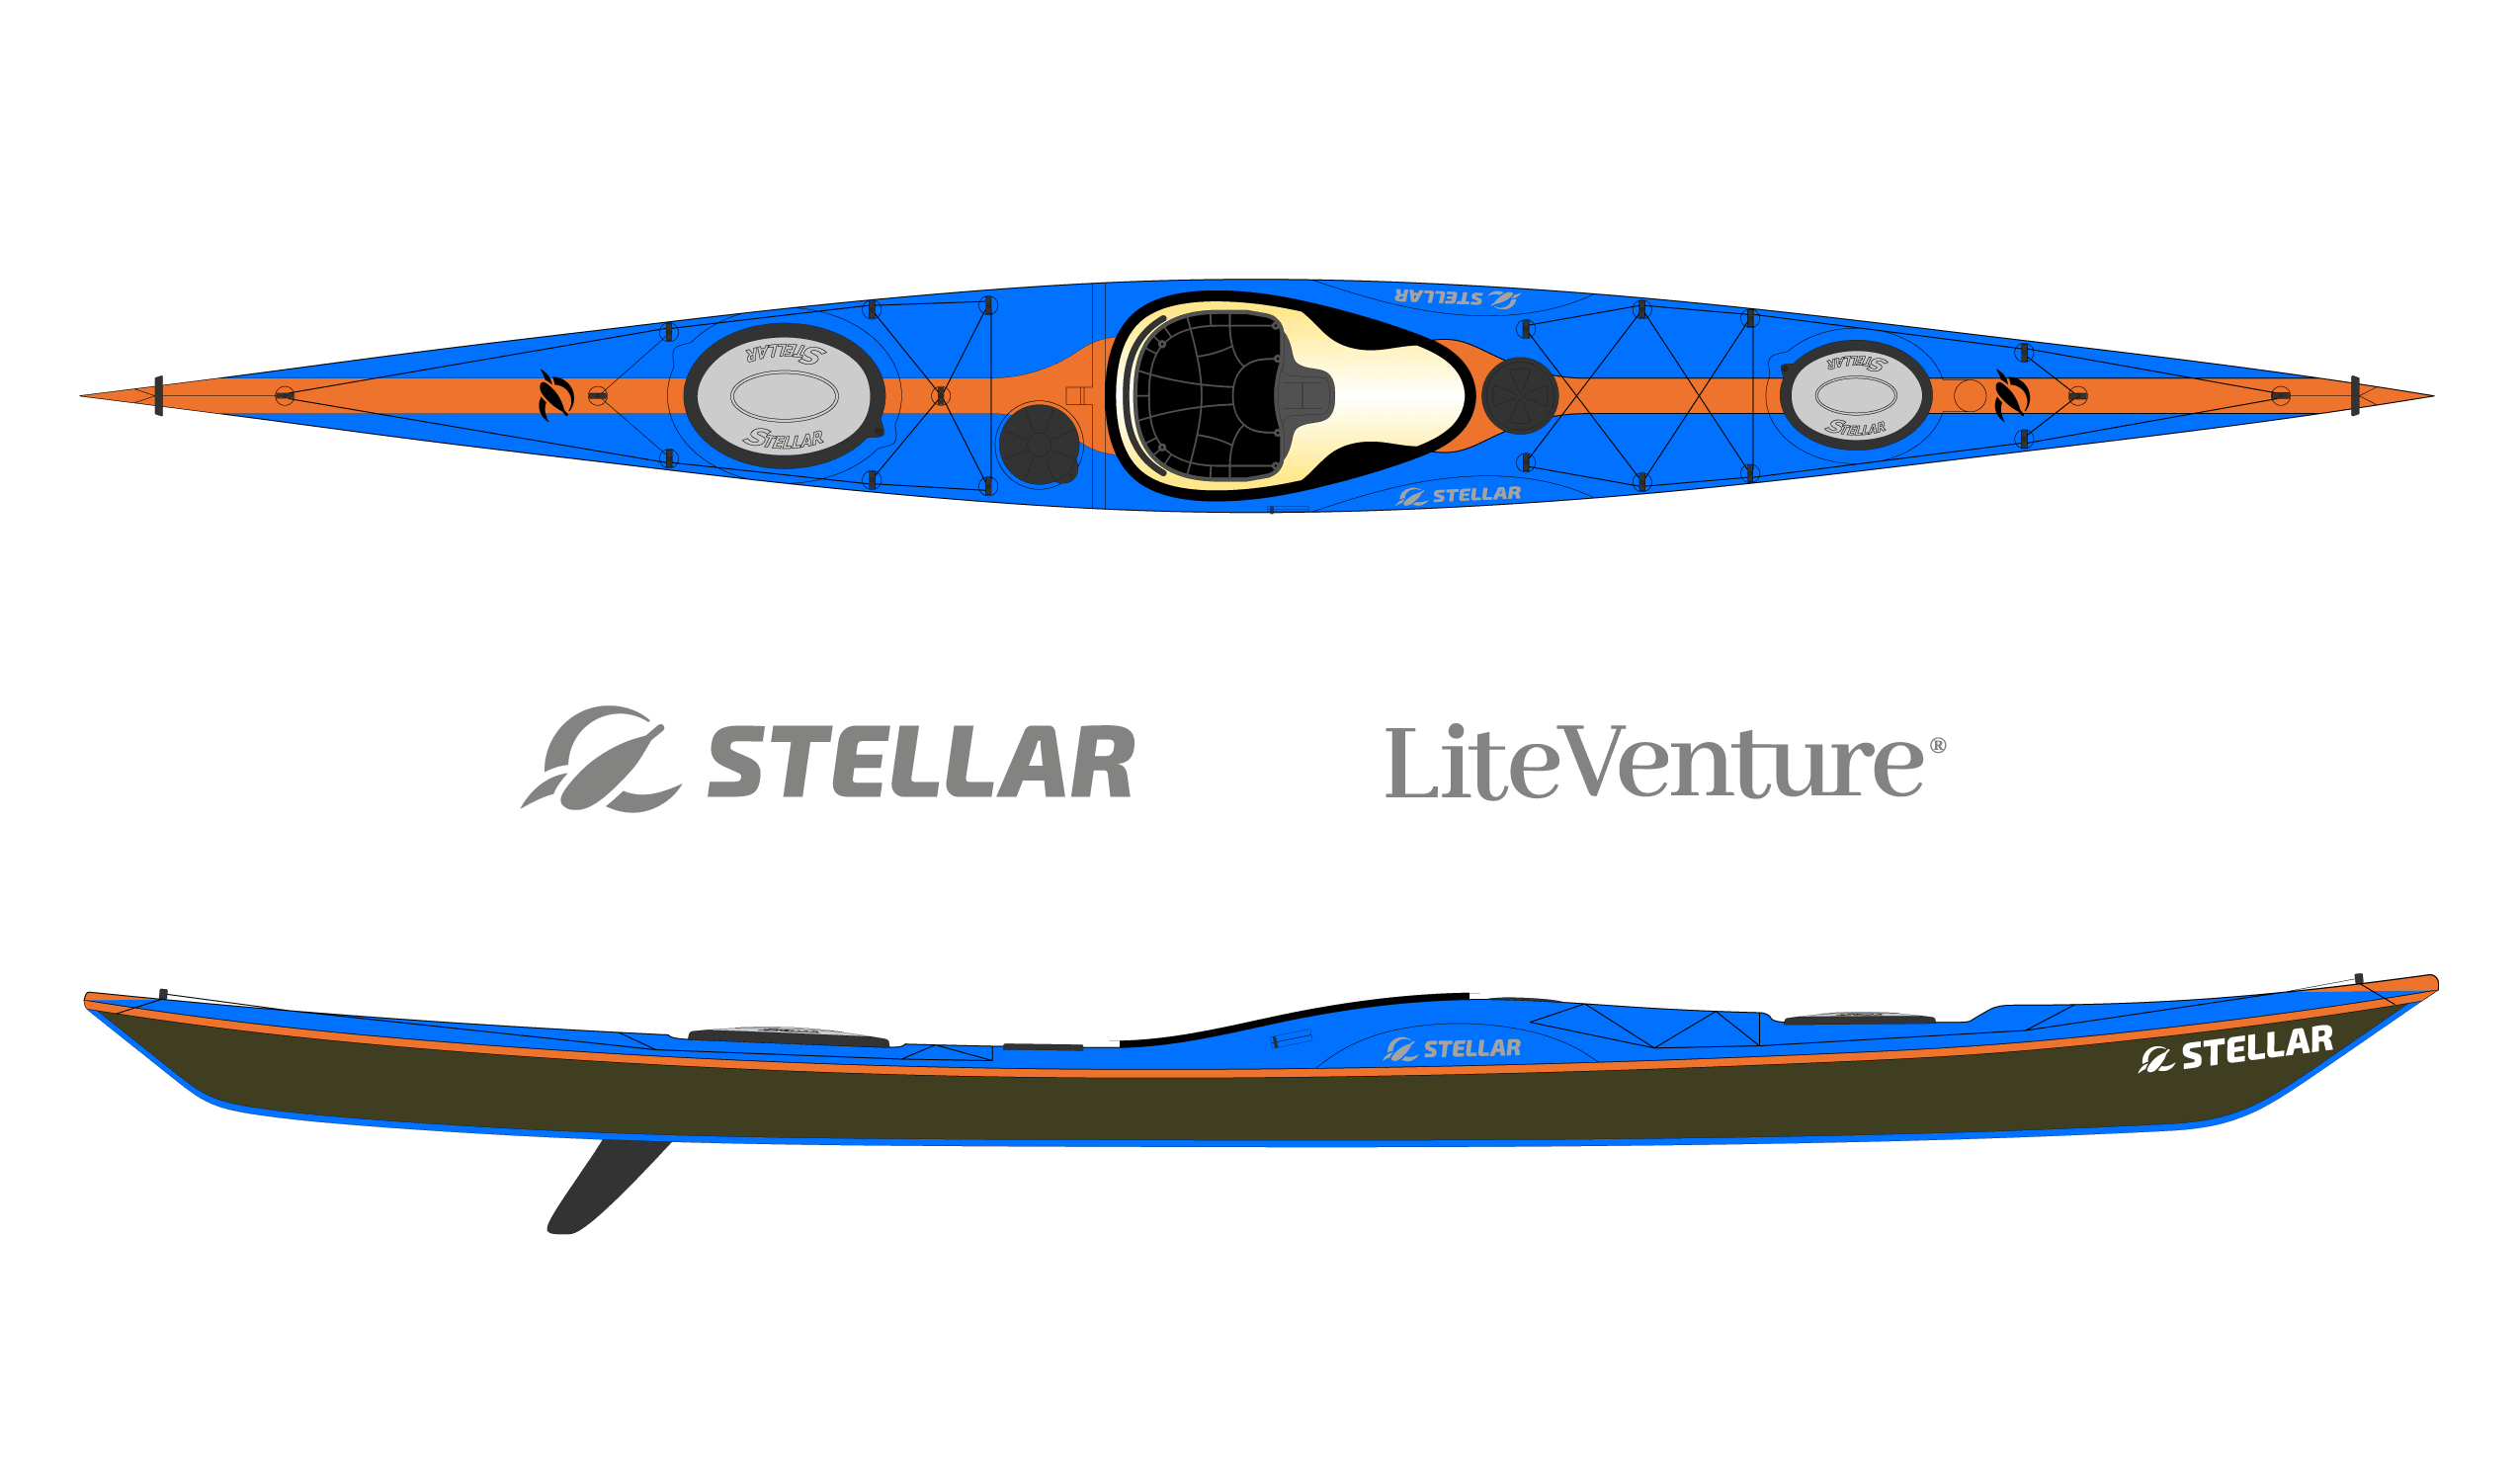 Produktbild von Kajak " SI18 Multisport-blau orange " der Marke STELLAR Lightweight für 3550.00 €. Erhältlich online bei Lite Venture ( www.liteventure.de )